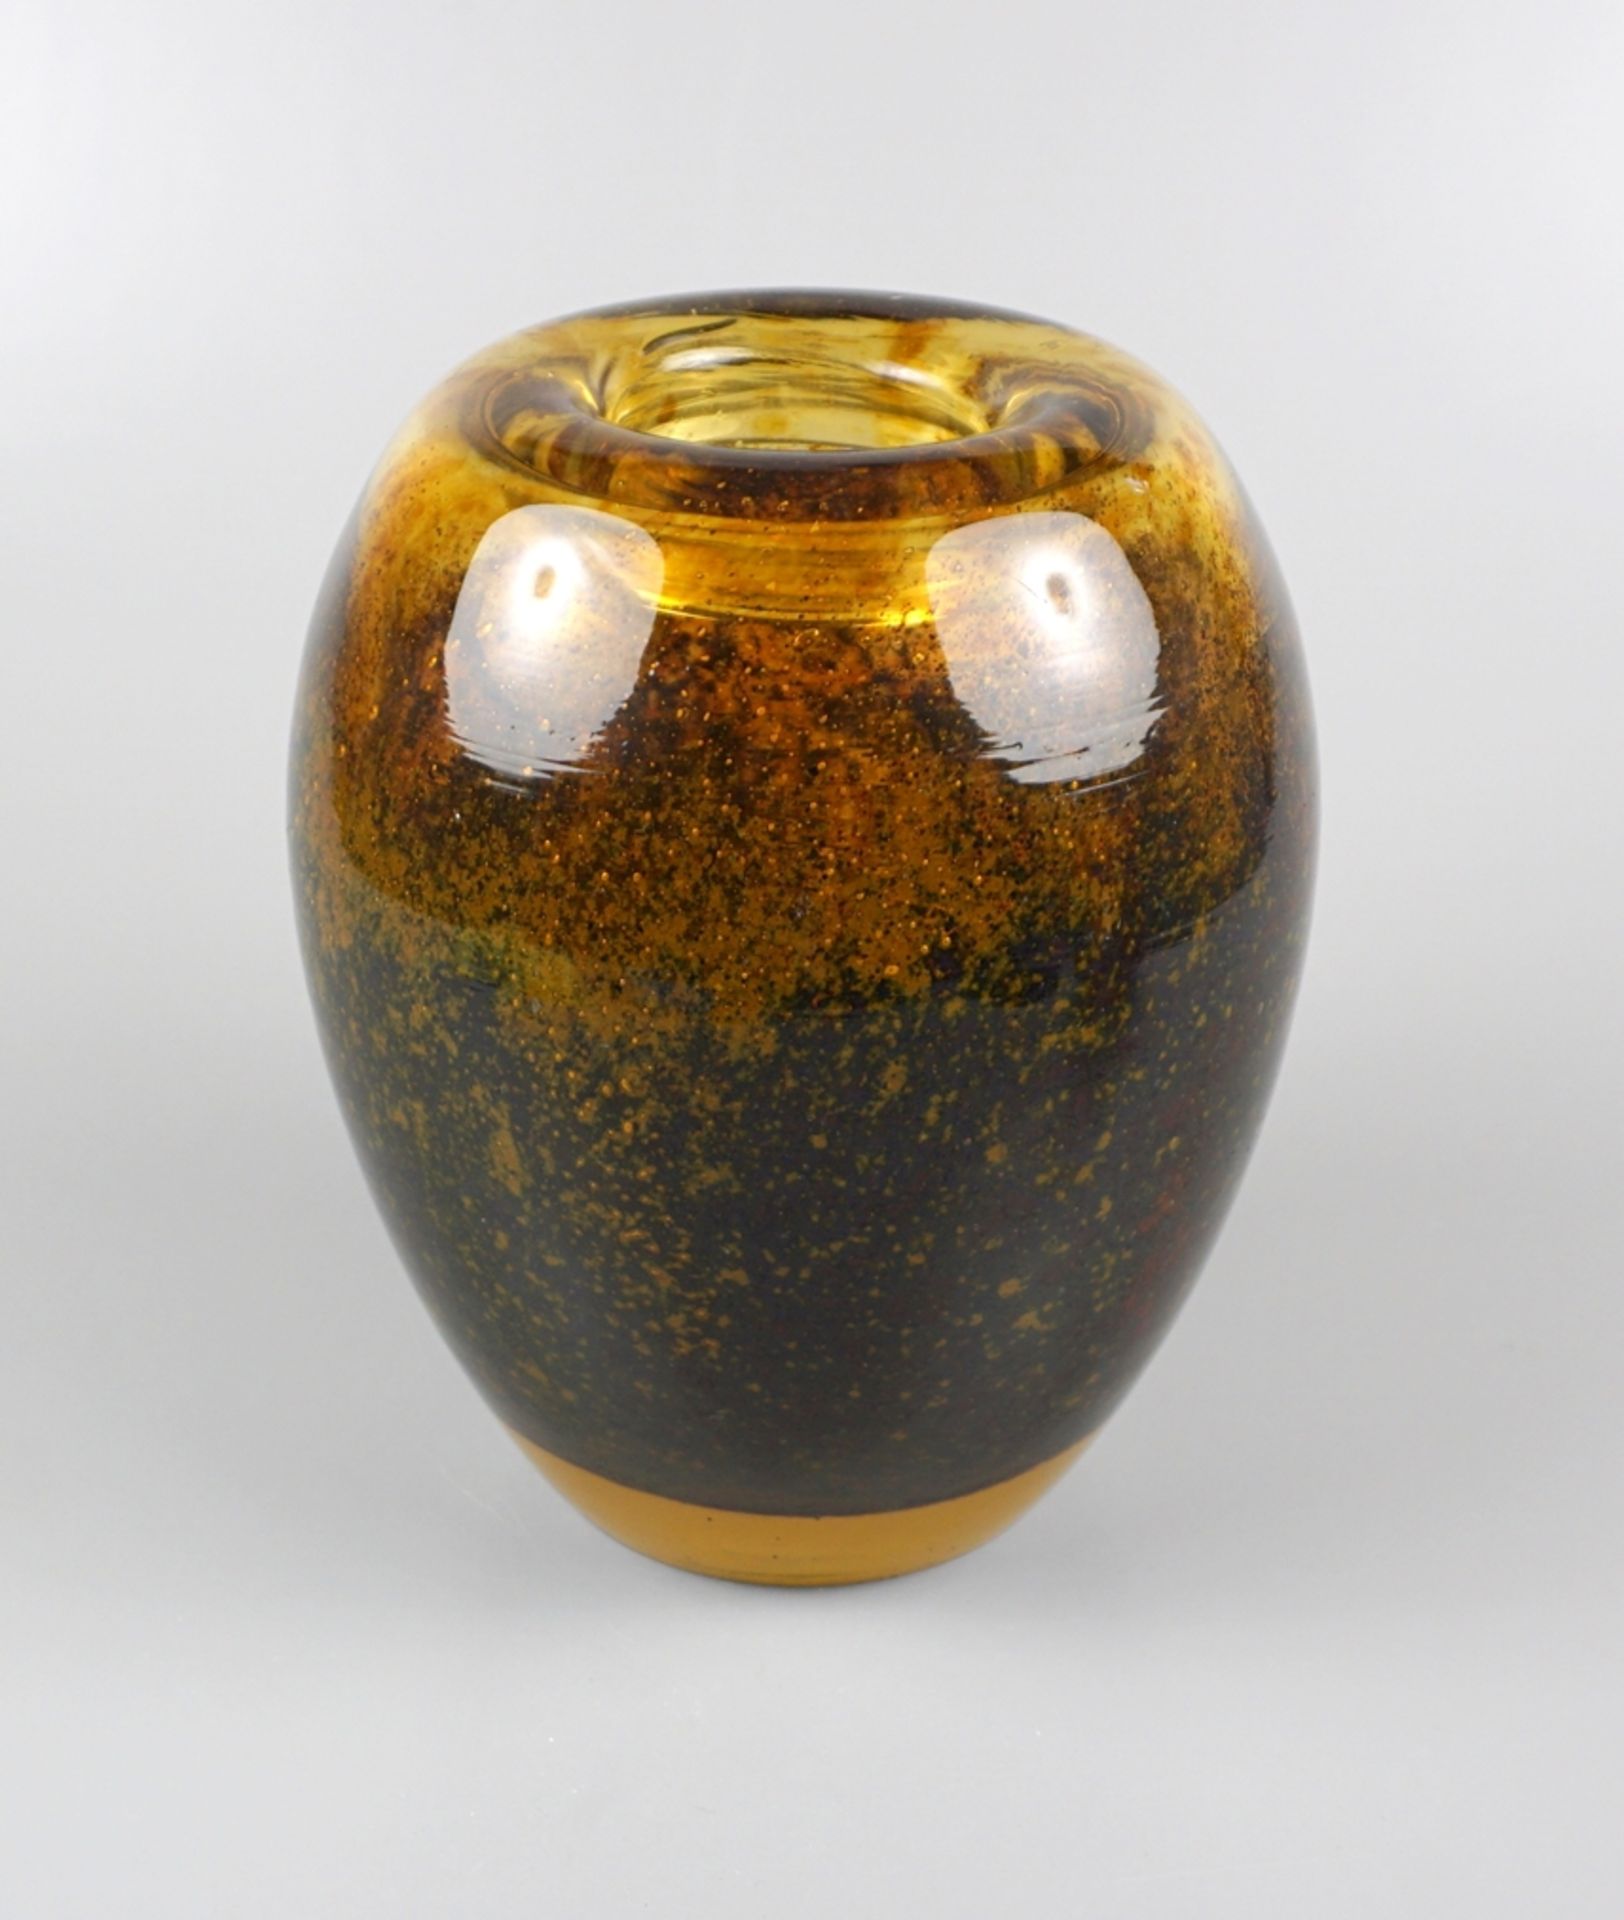 Ikora vase "Dexel egg", amber, brown speckled, Walter Dexel for WMF, design 1930s, h.17cm